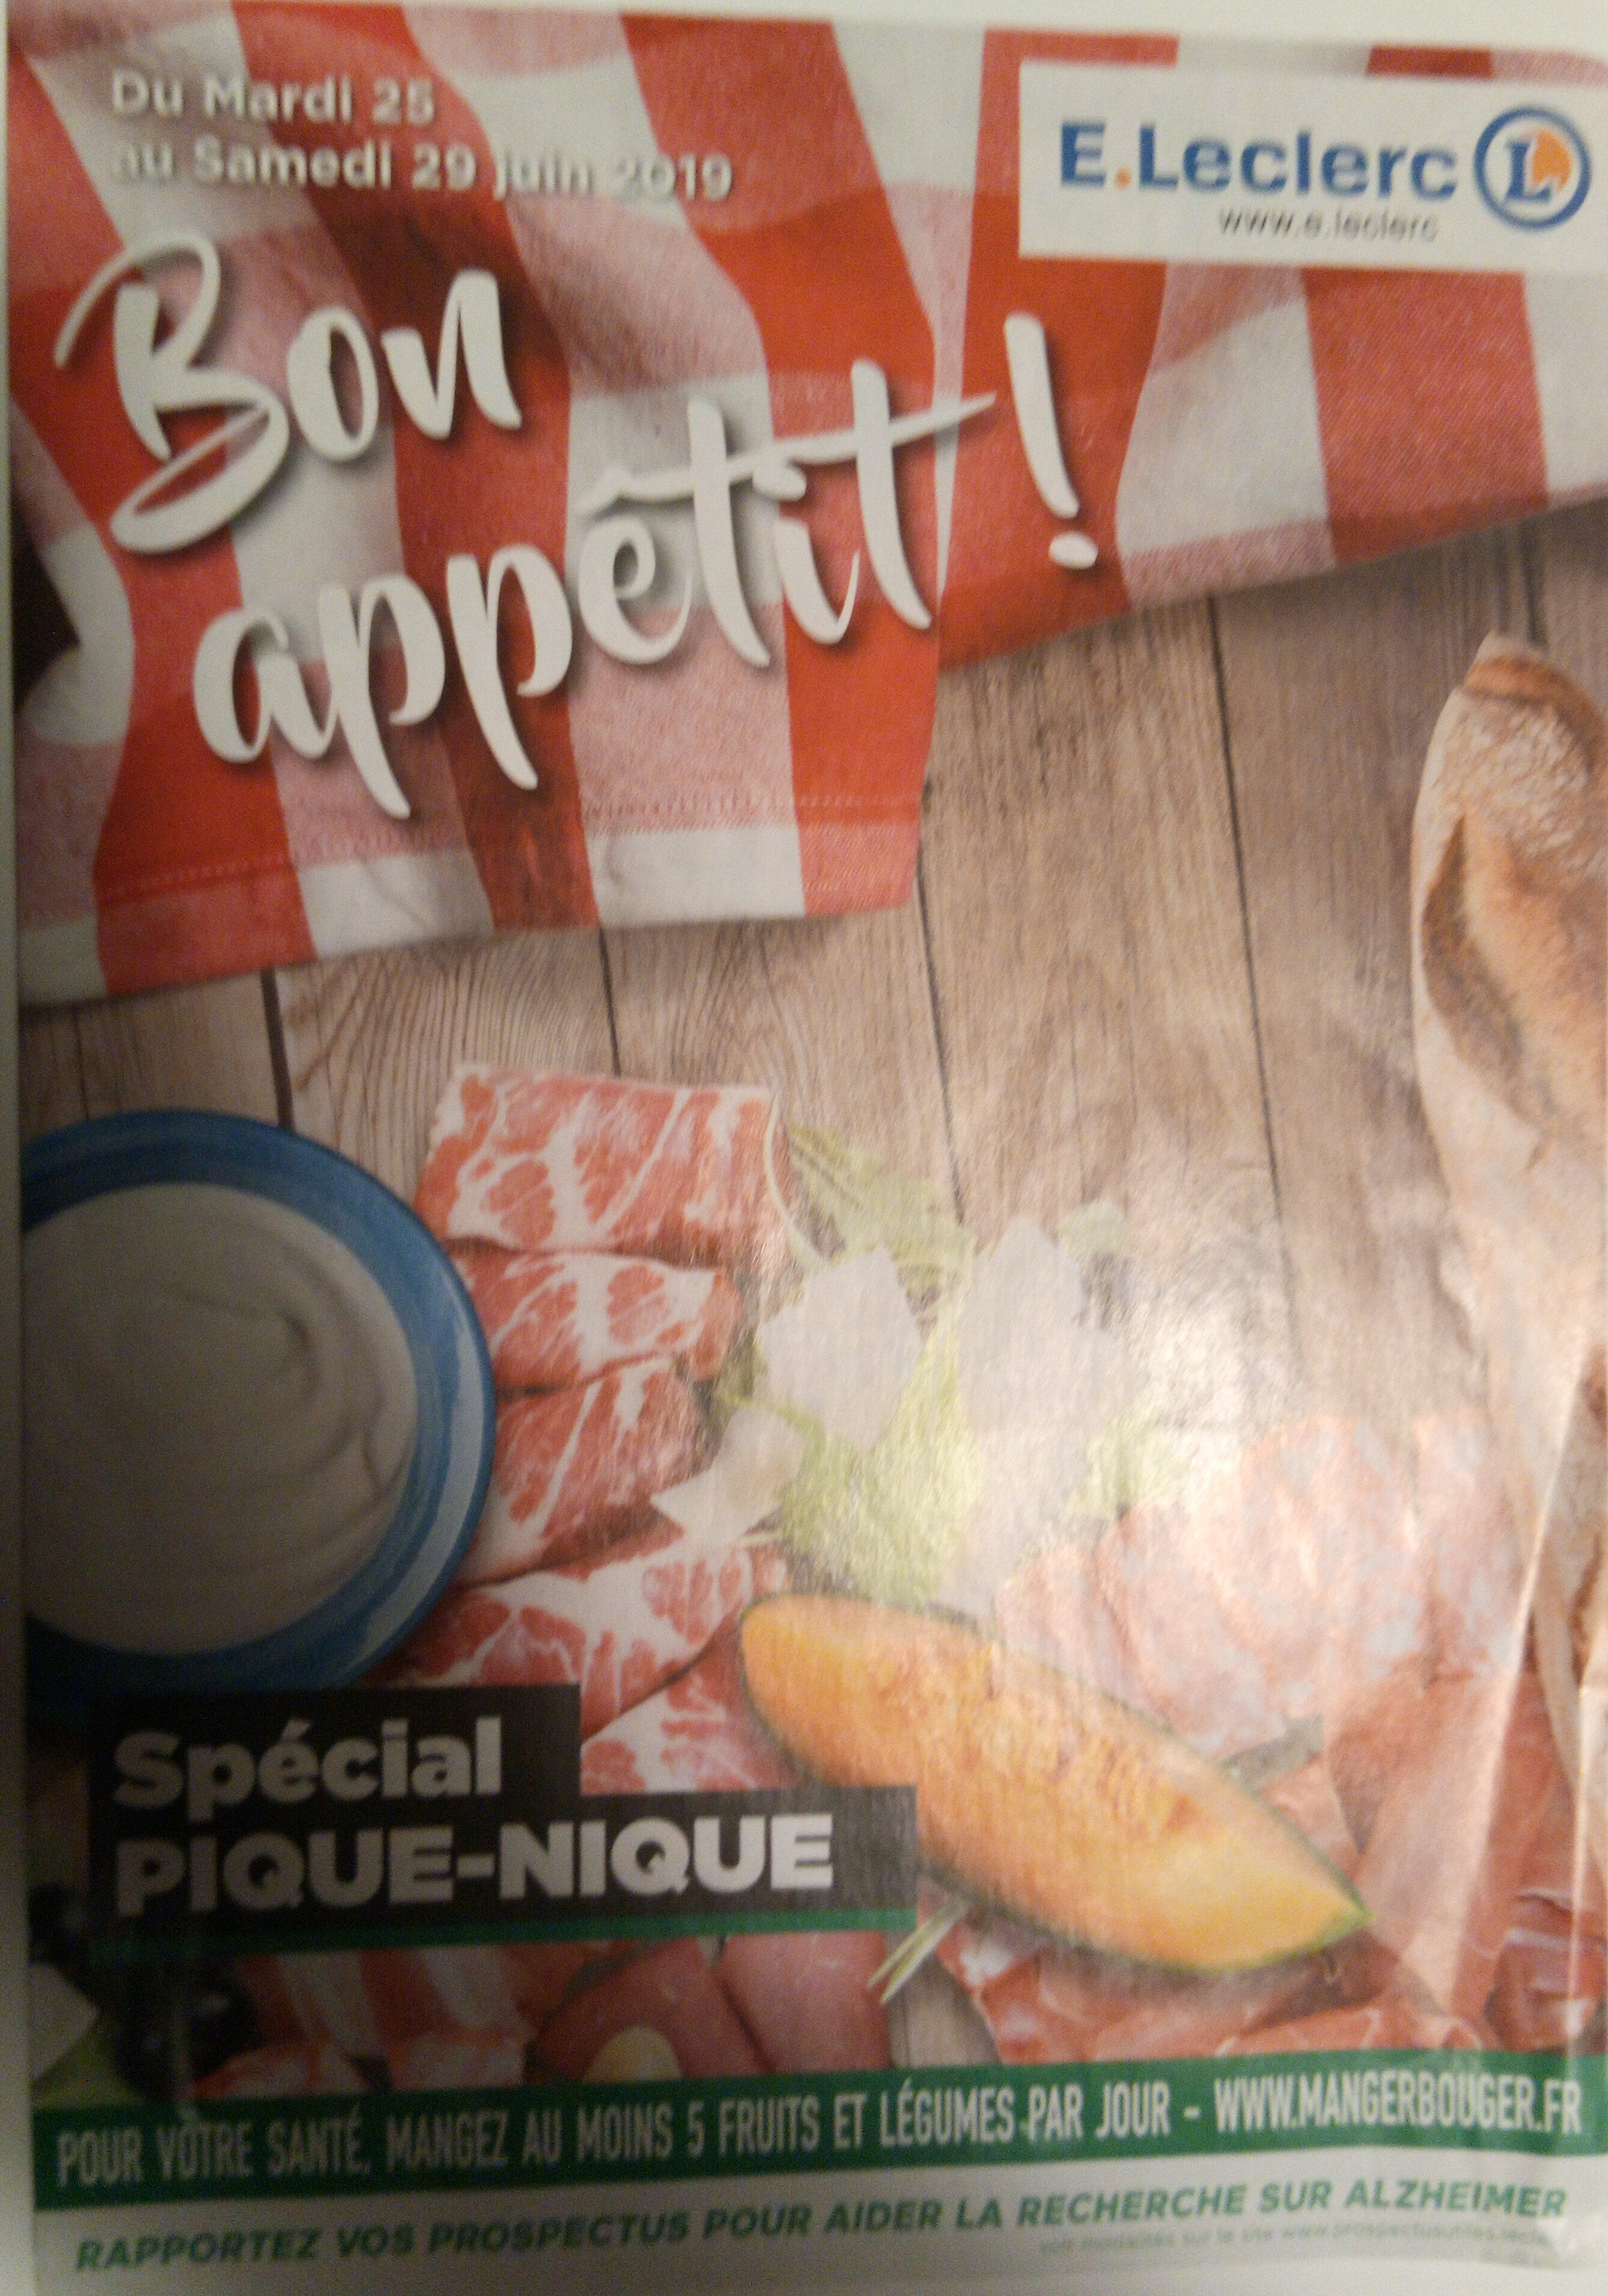 bon appétit-E-LECLERC - Product - fr